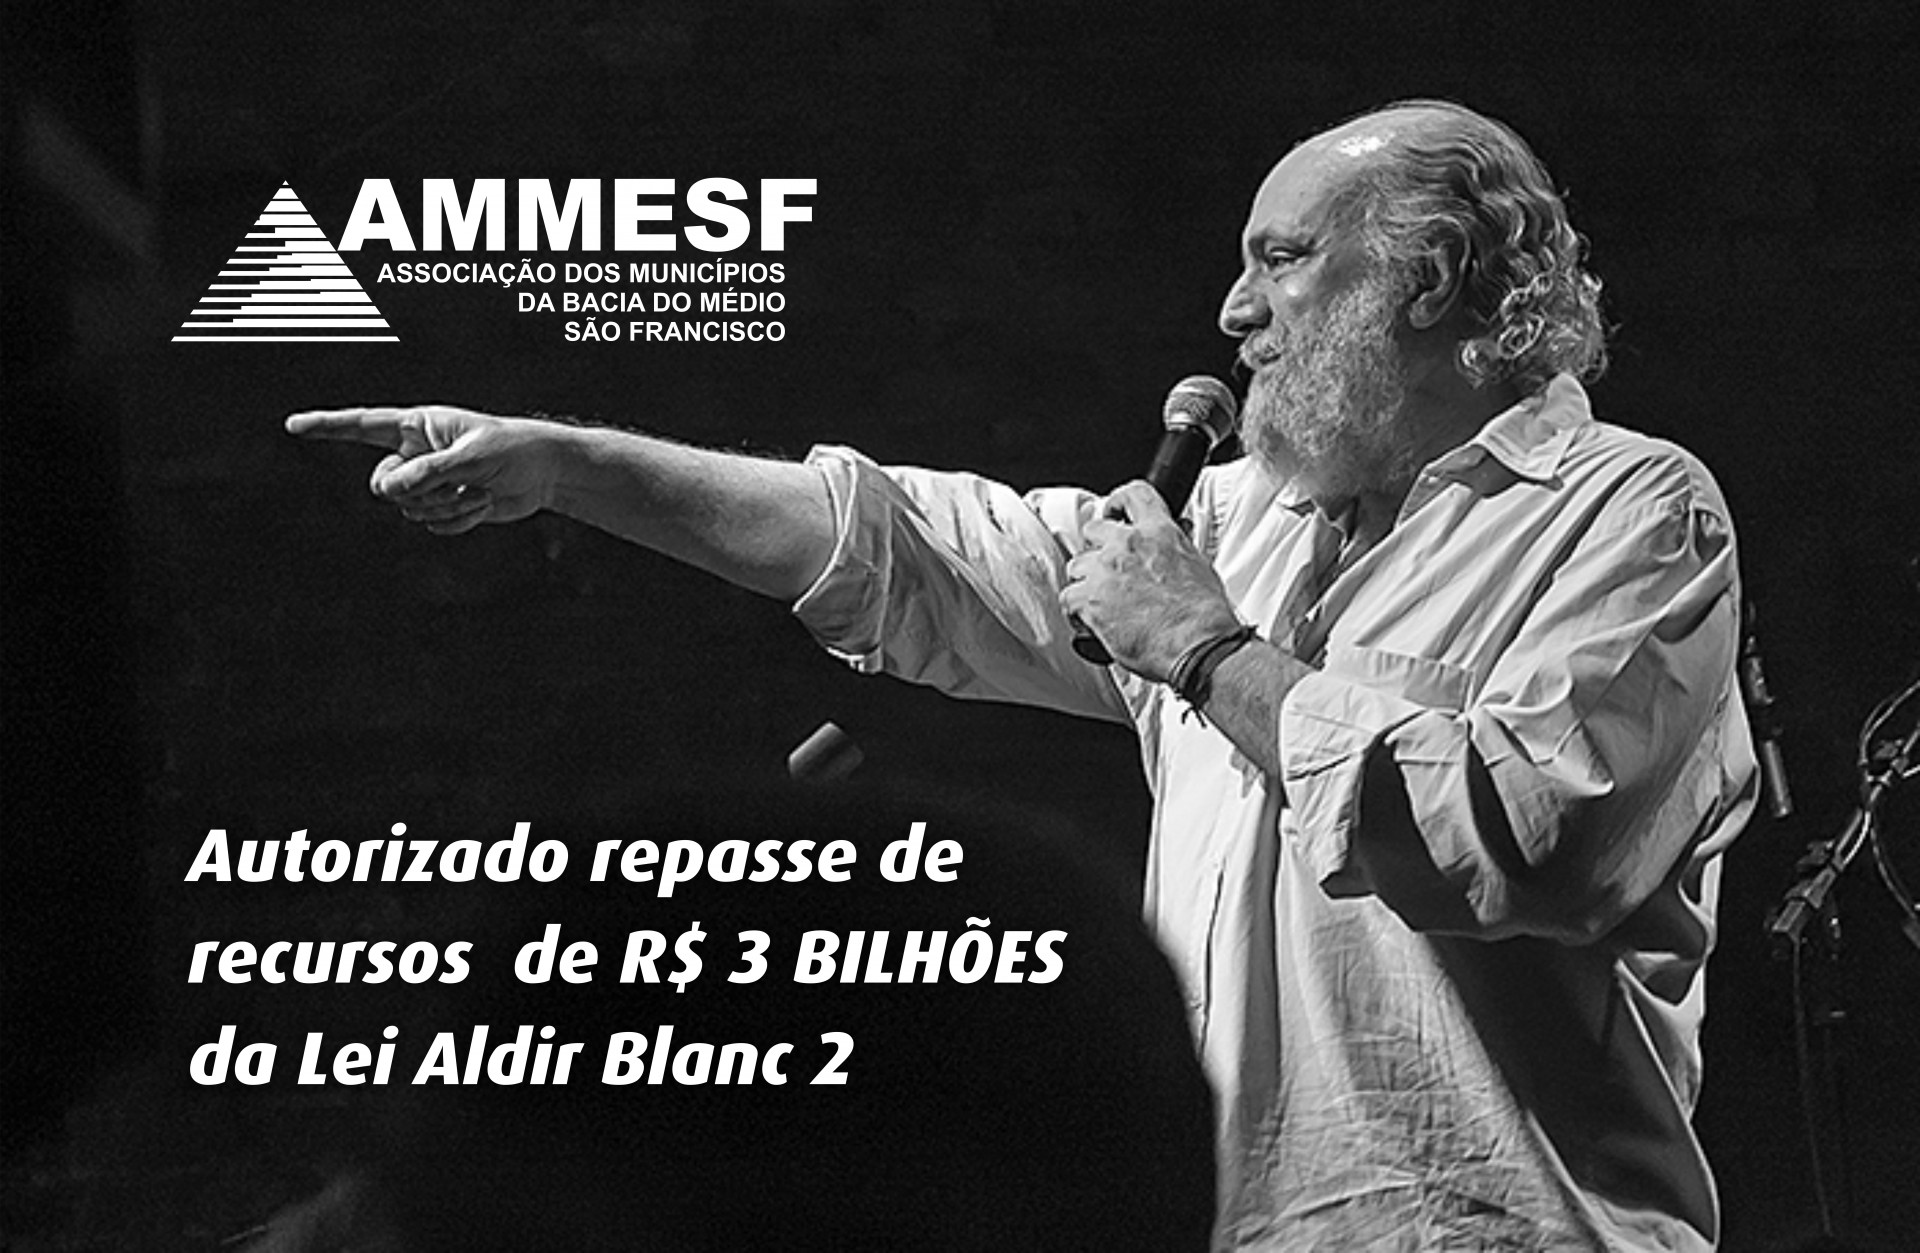 AMMESF recomenda regularização dos municípios para recebimento de recursos da Lei Aldir Blanc 2, autorizados nesta semana